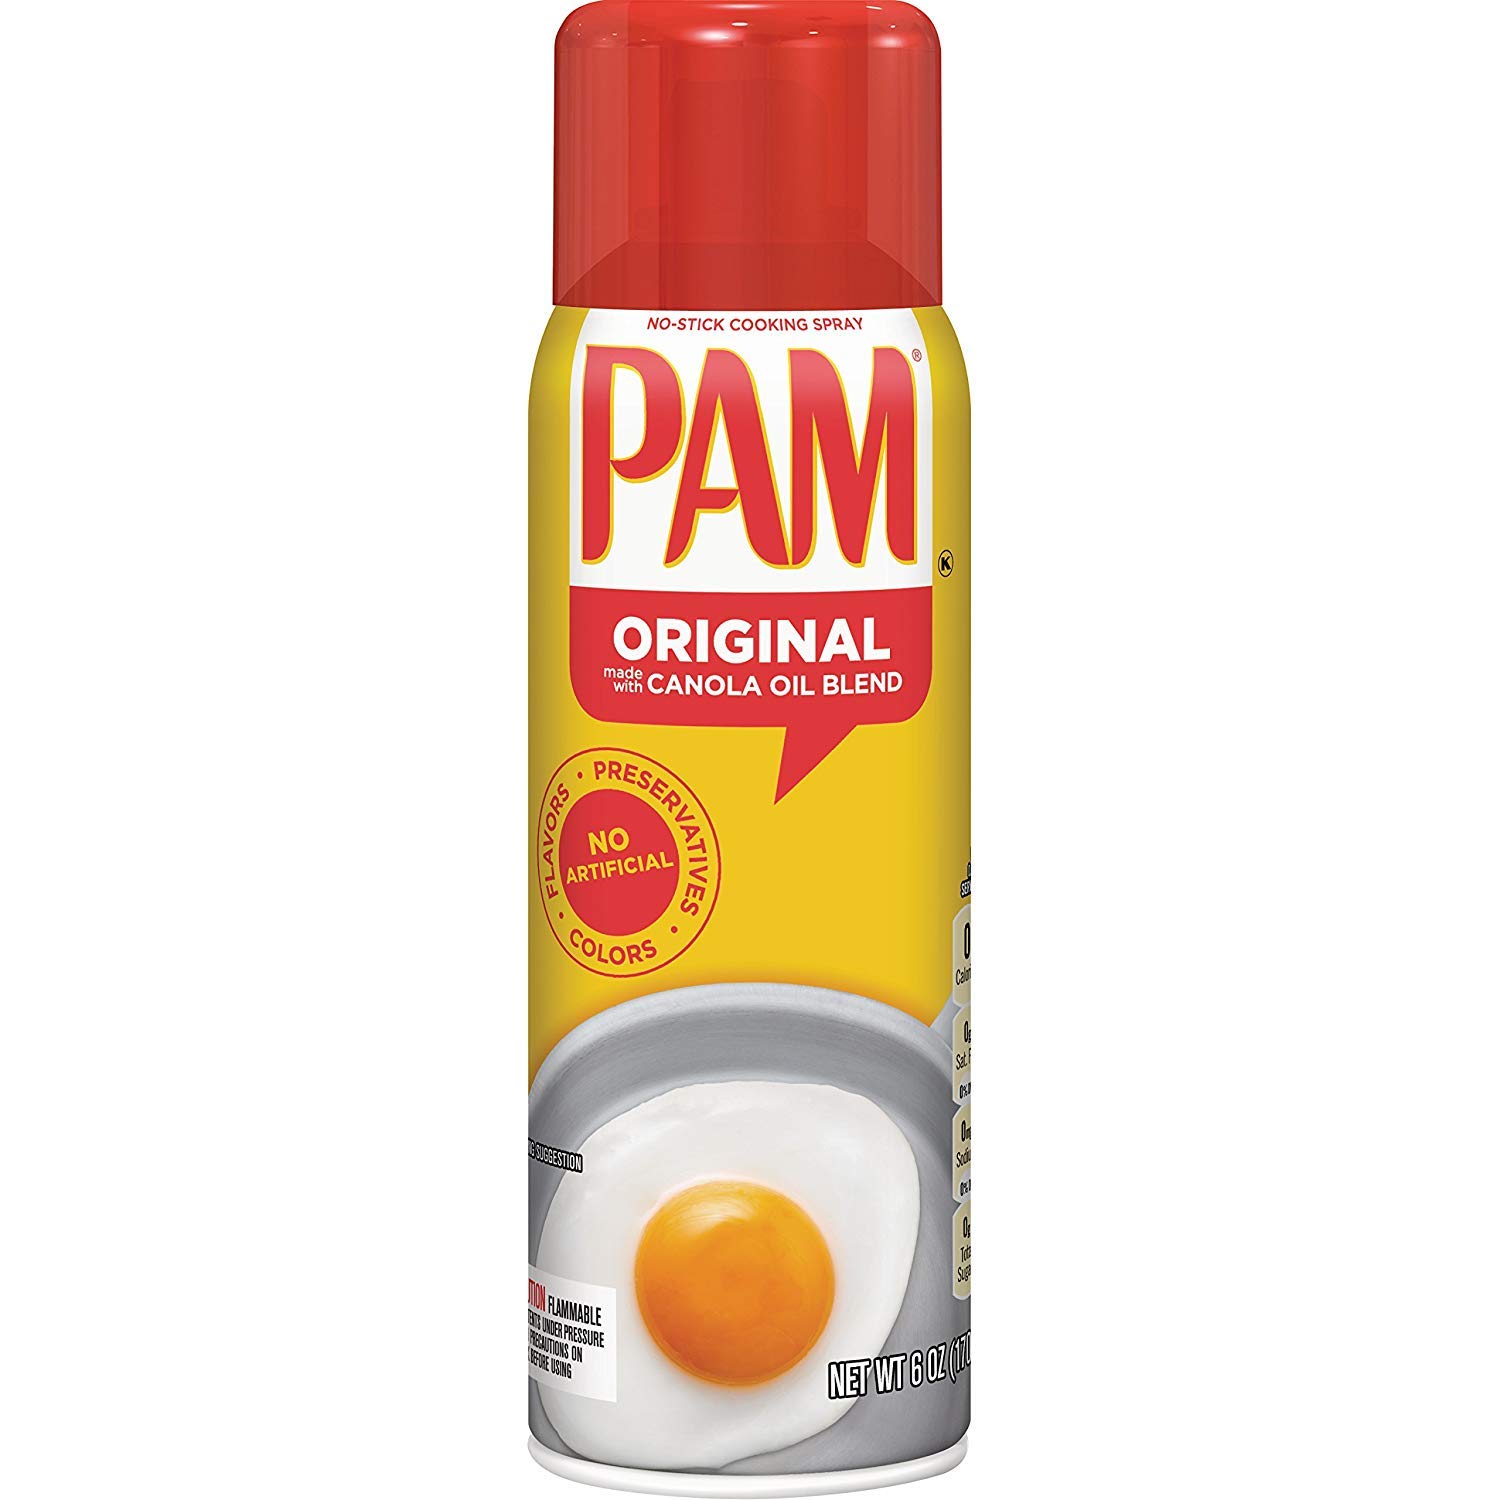 Pam Original Canola Cooking Spray